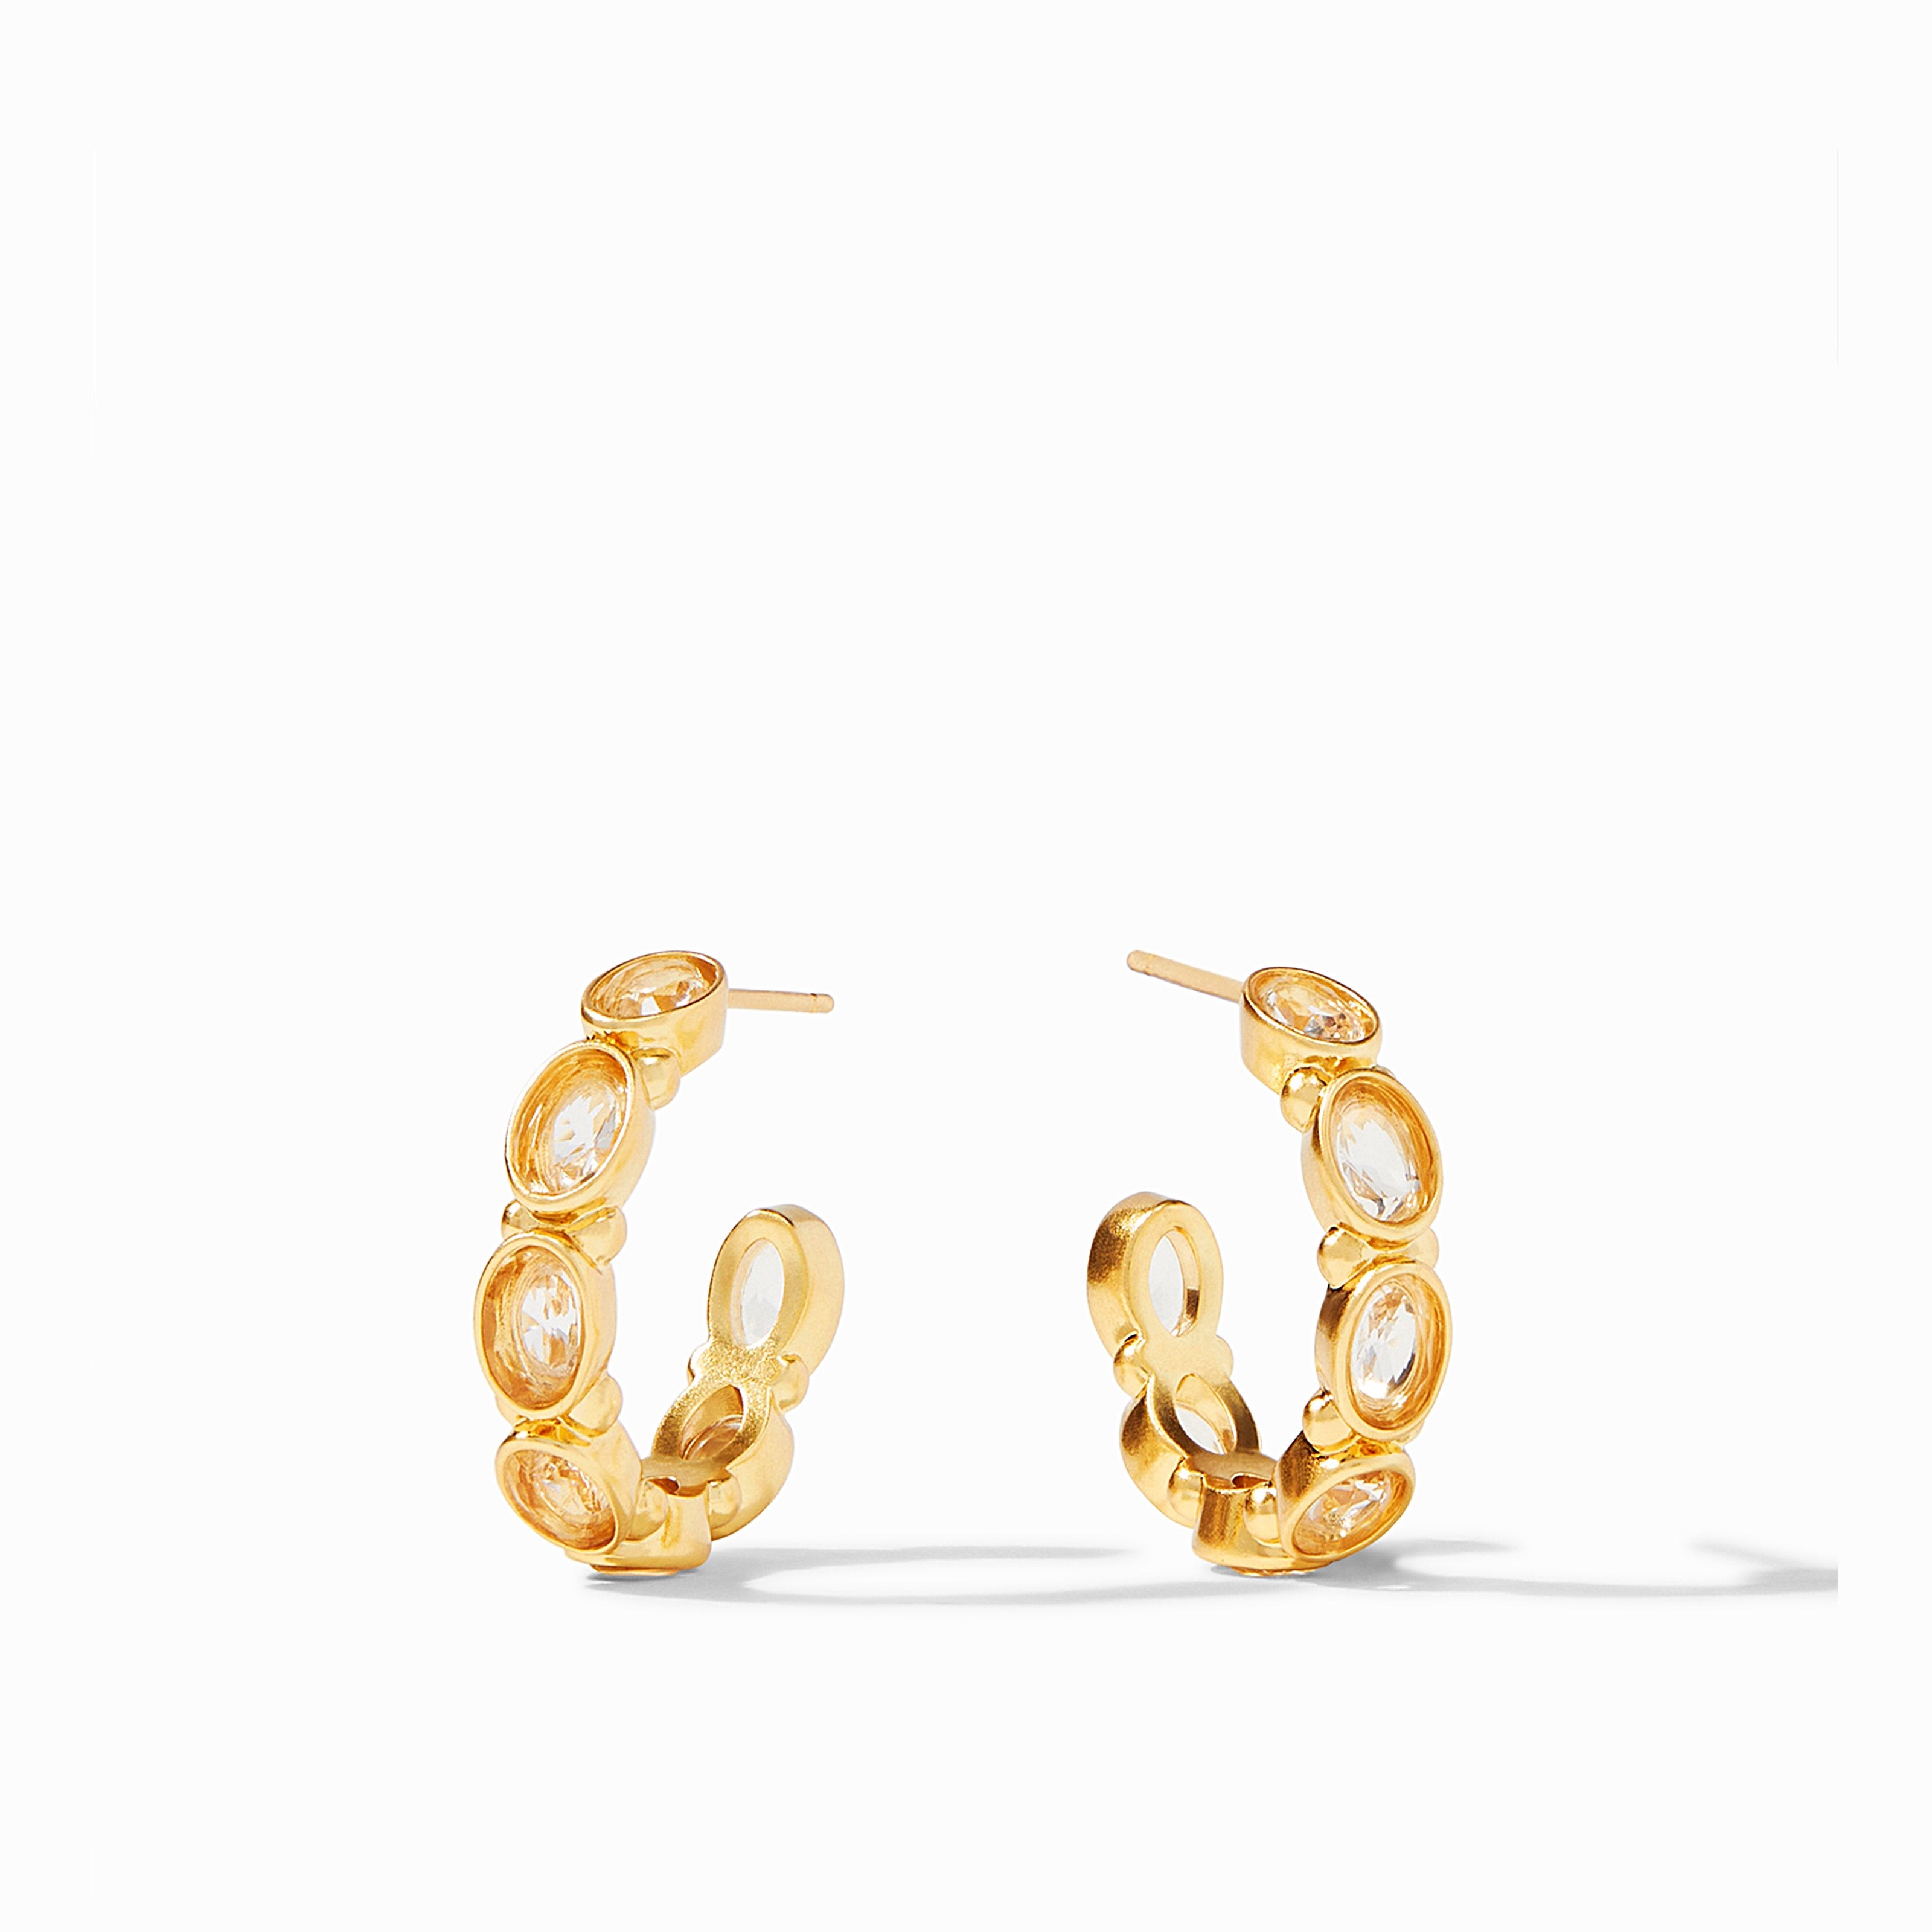 Buy 24K Gold Hoops, Gold Hoop Earrings, Gold Plain Hoops, Small / Medium Gold  Hoops, Everyday Hoop Earrings Online in India - Etsy